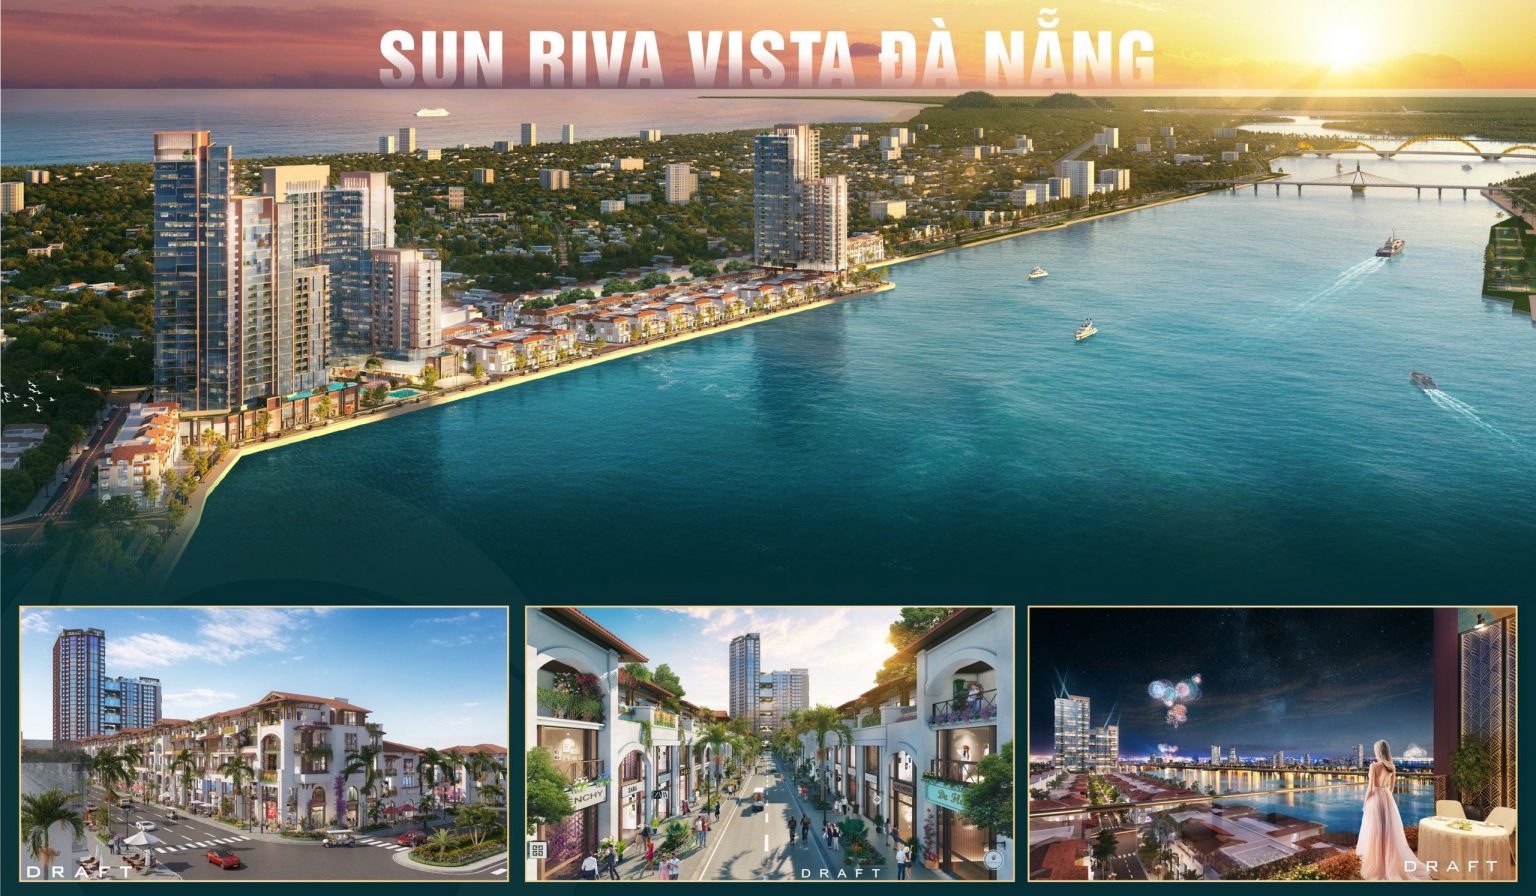 Quy hoạch SUN RIVA VISTA nằm trong trọng điểm quy hoạch của Đà Nẵng 3